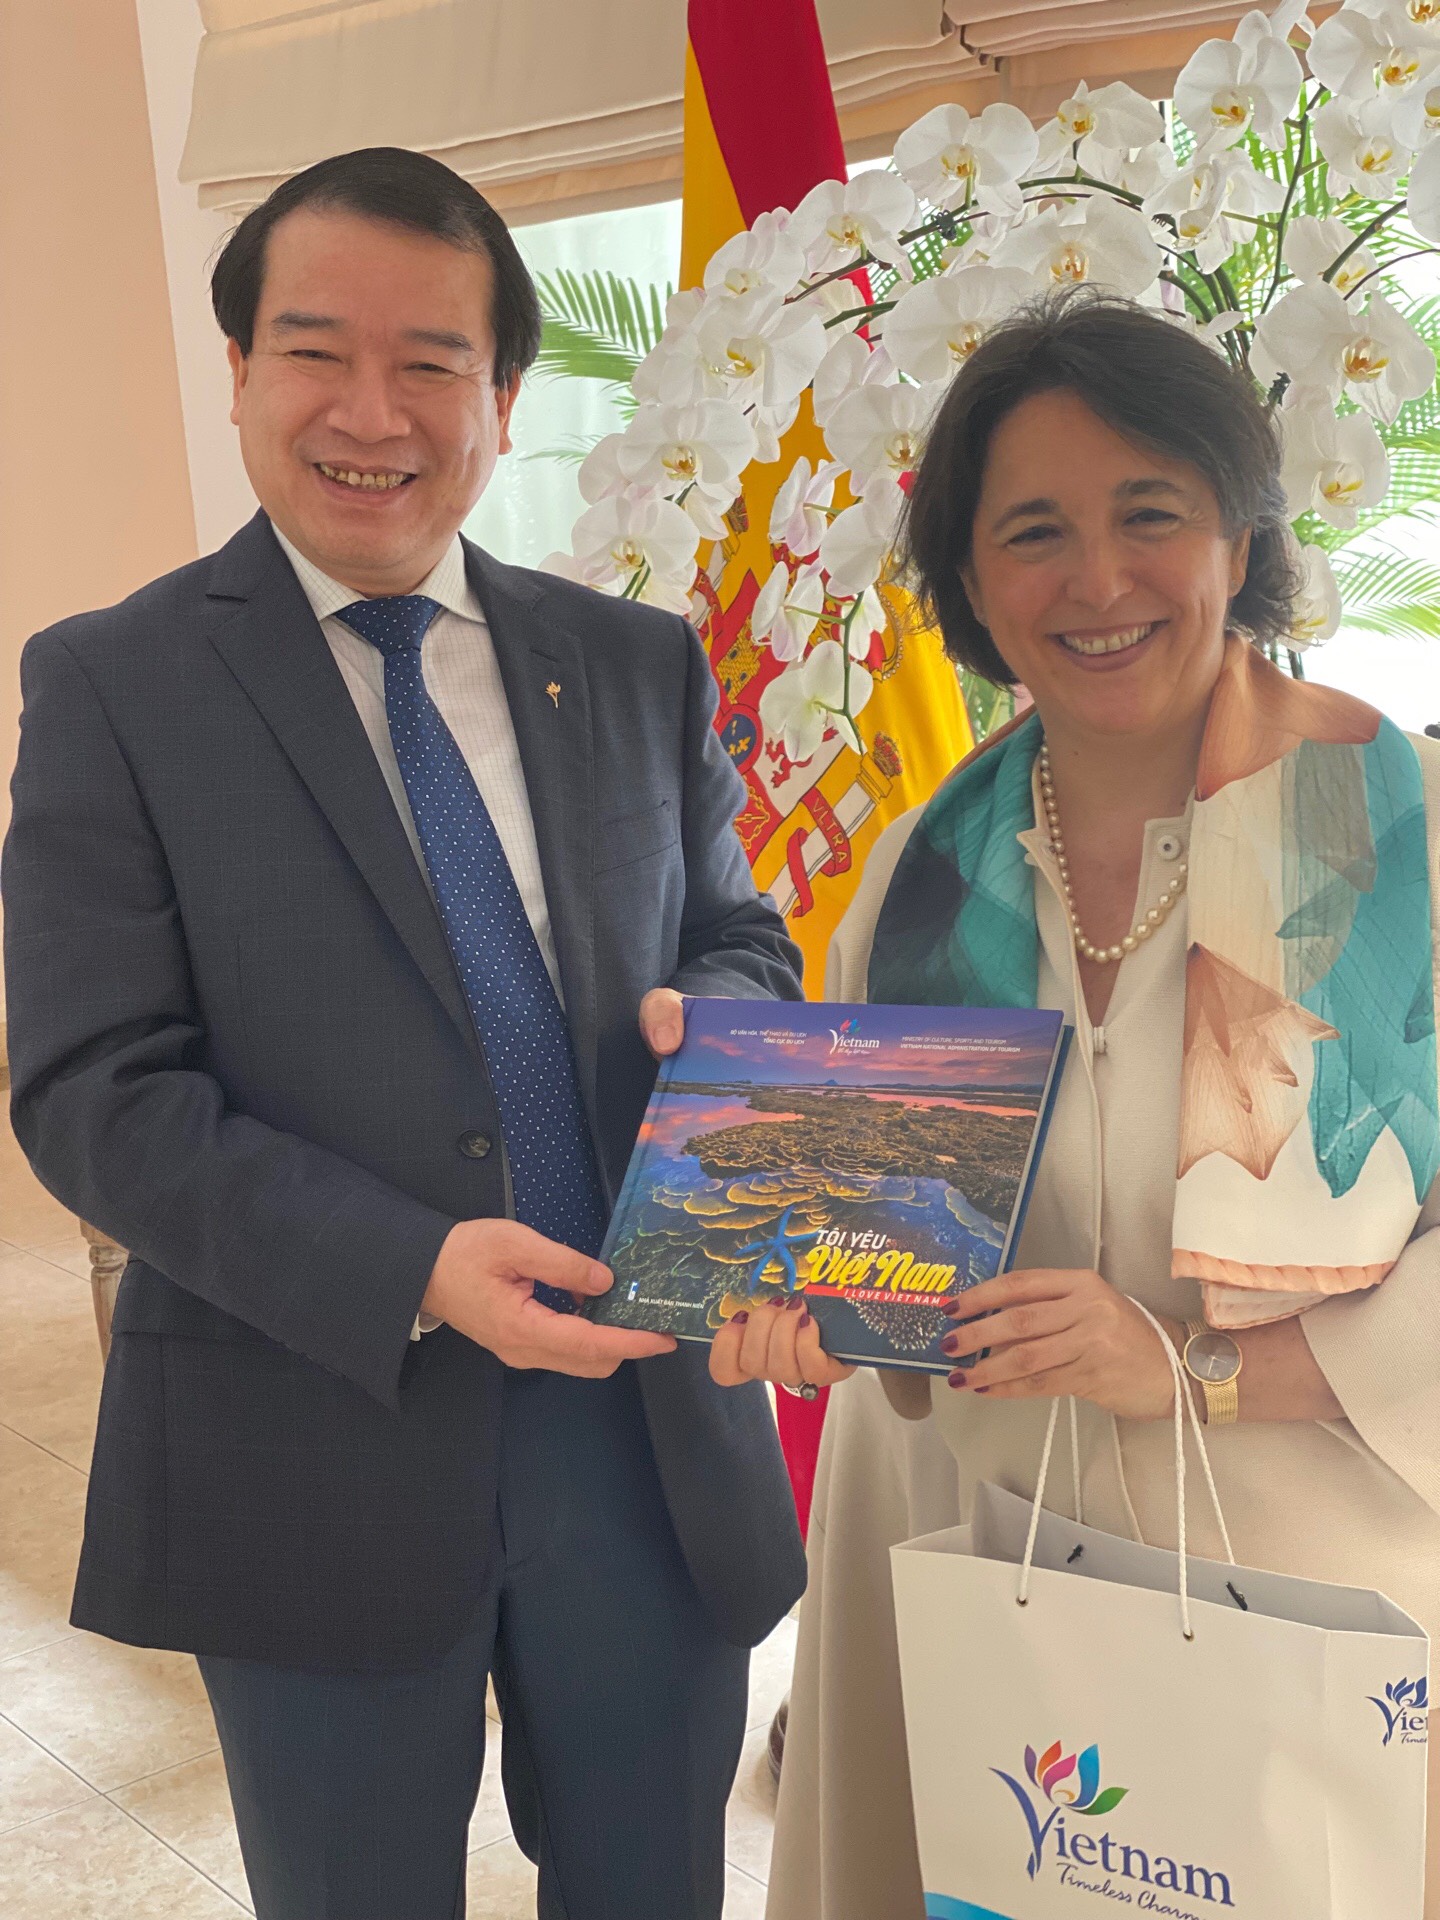 Phó Tổng cục trưởng Hà Văn Siêu tặng quà kỷ niệm cho bà Pilar Mendez Jimenez - Đại sứ Tây Ban Nha tại Việt Nam